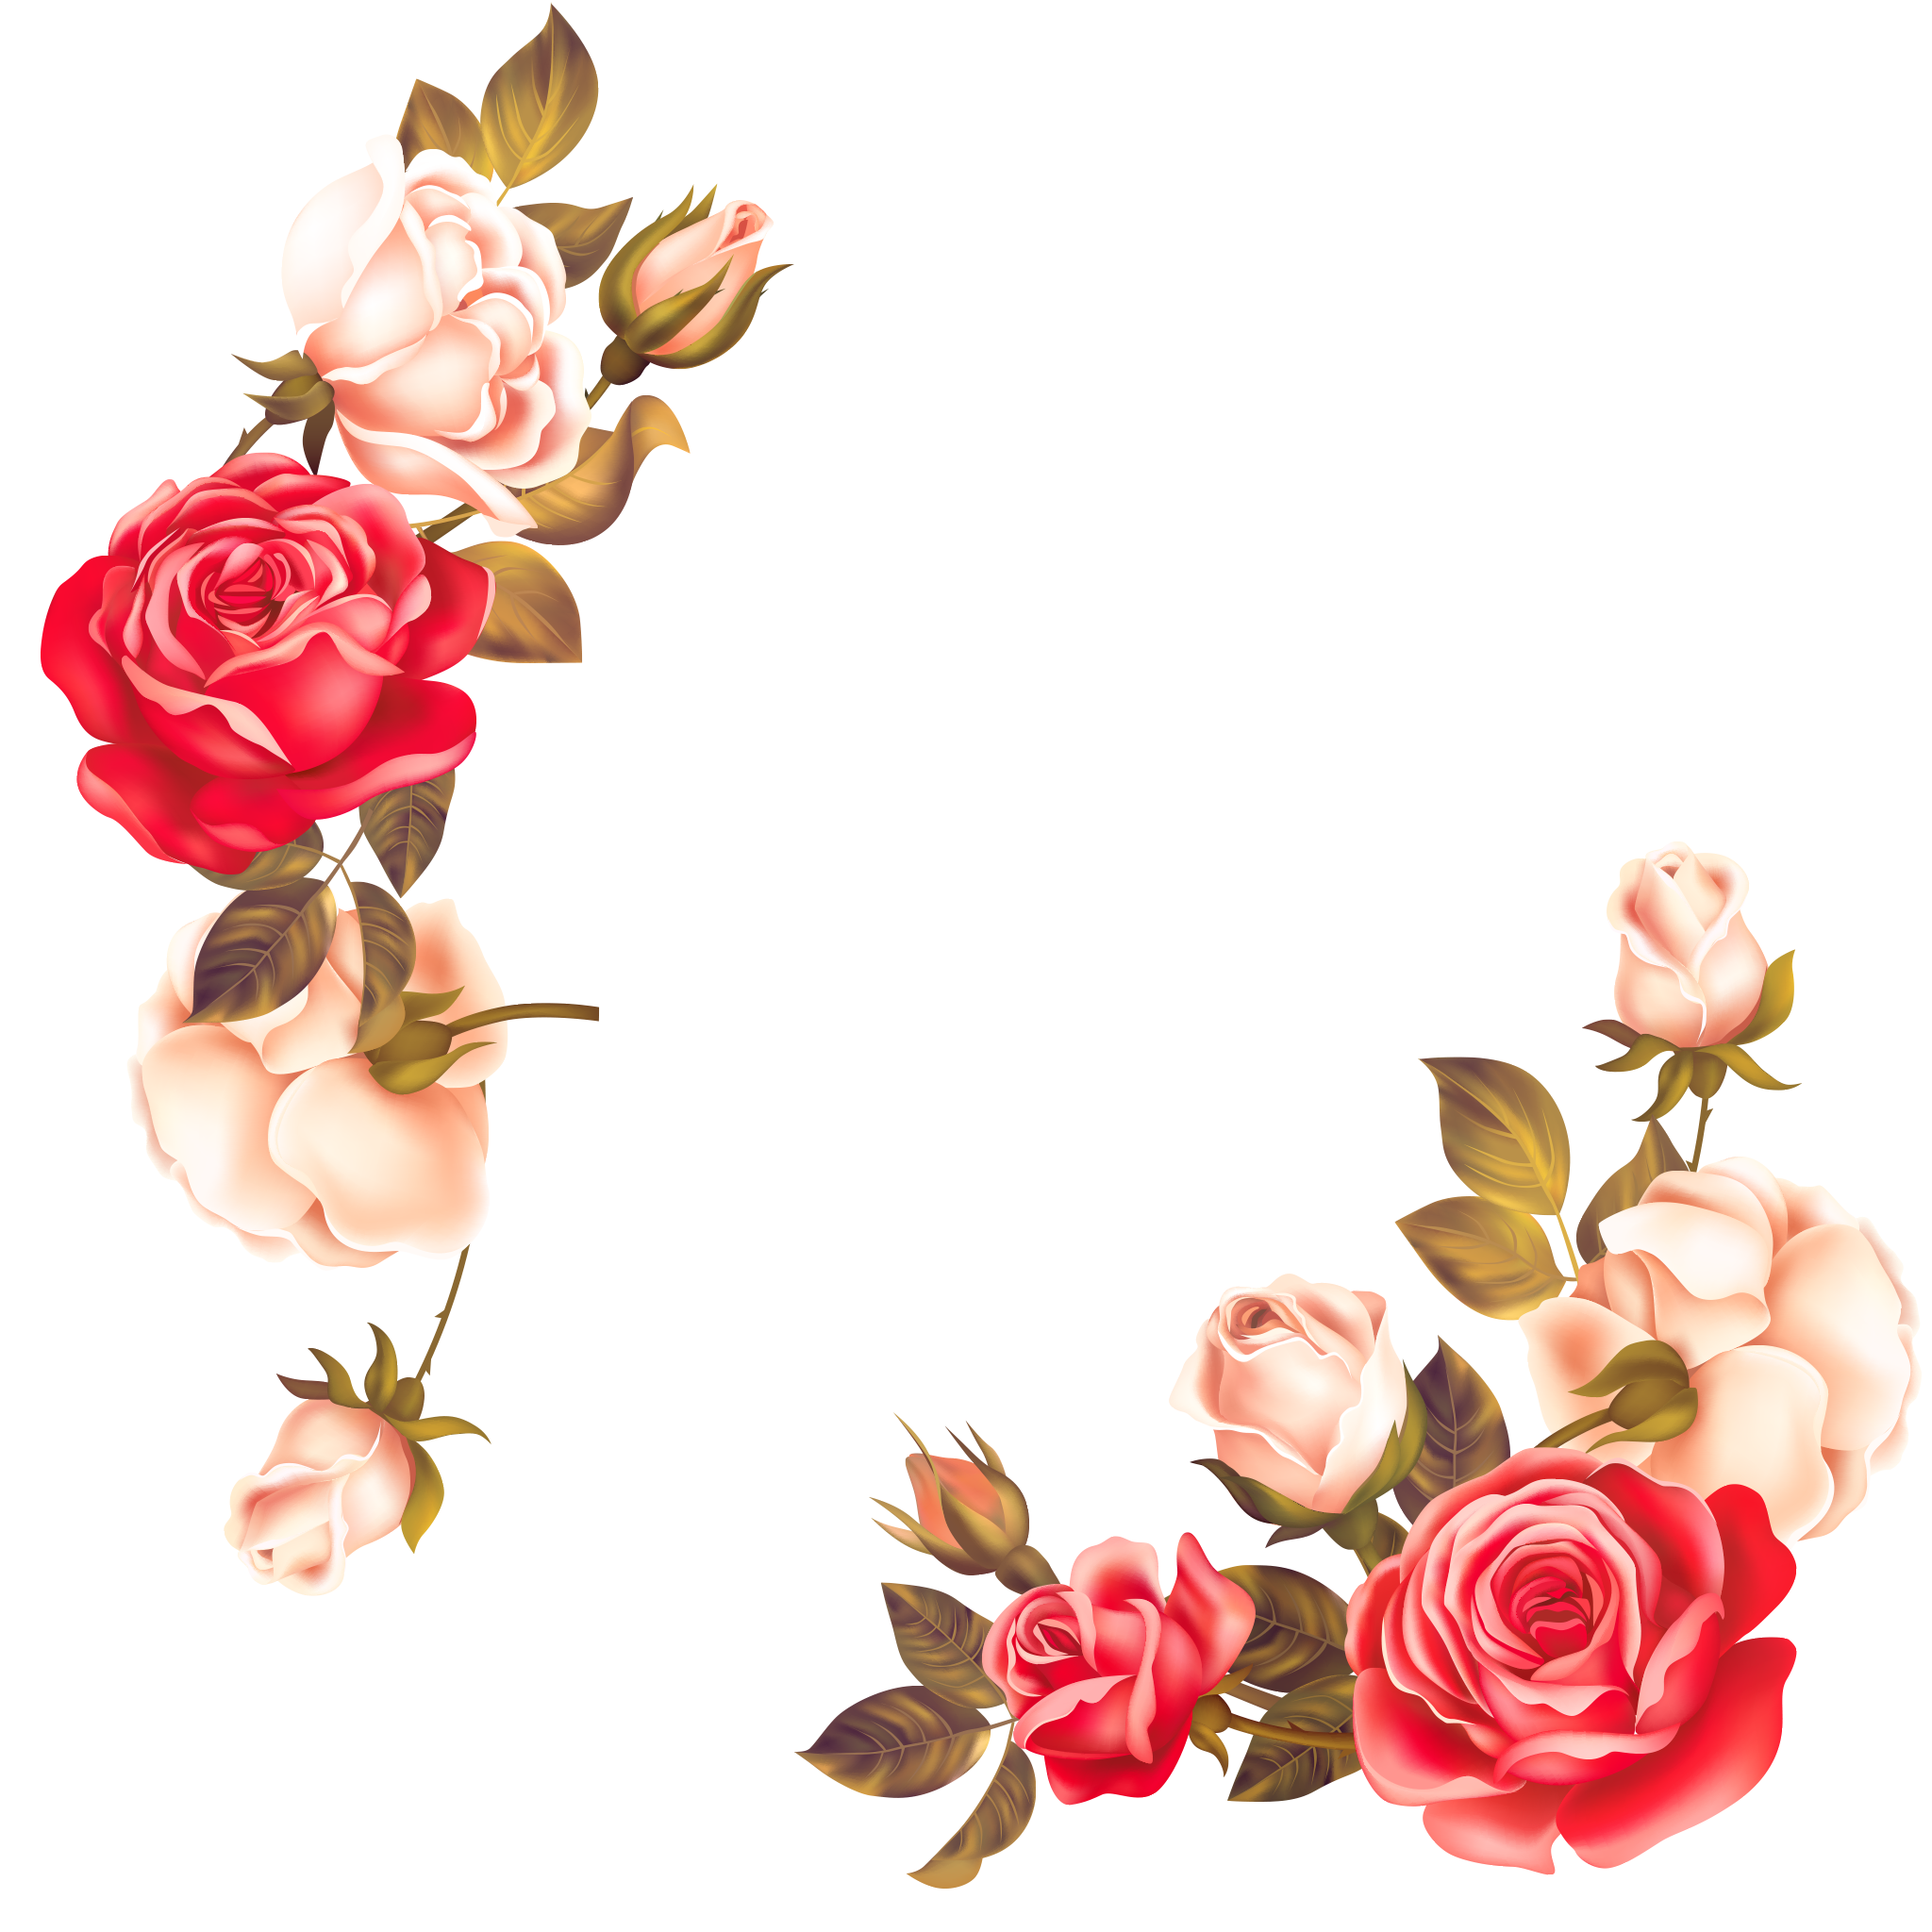 Rosas flower frame Transparent Background